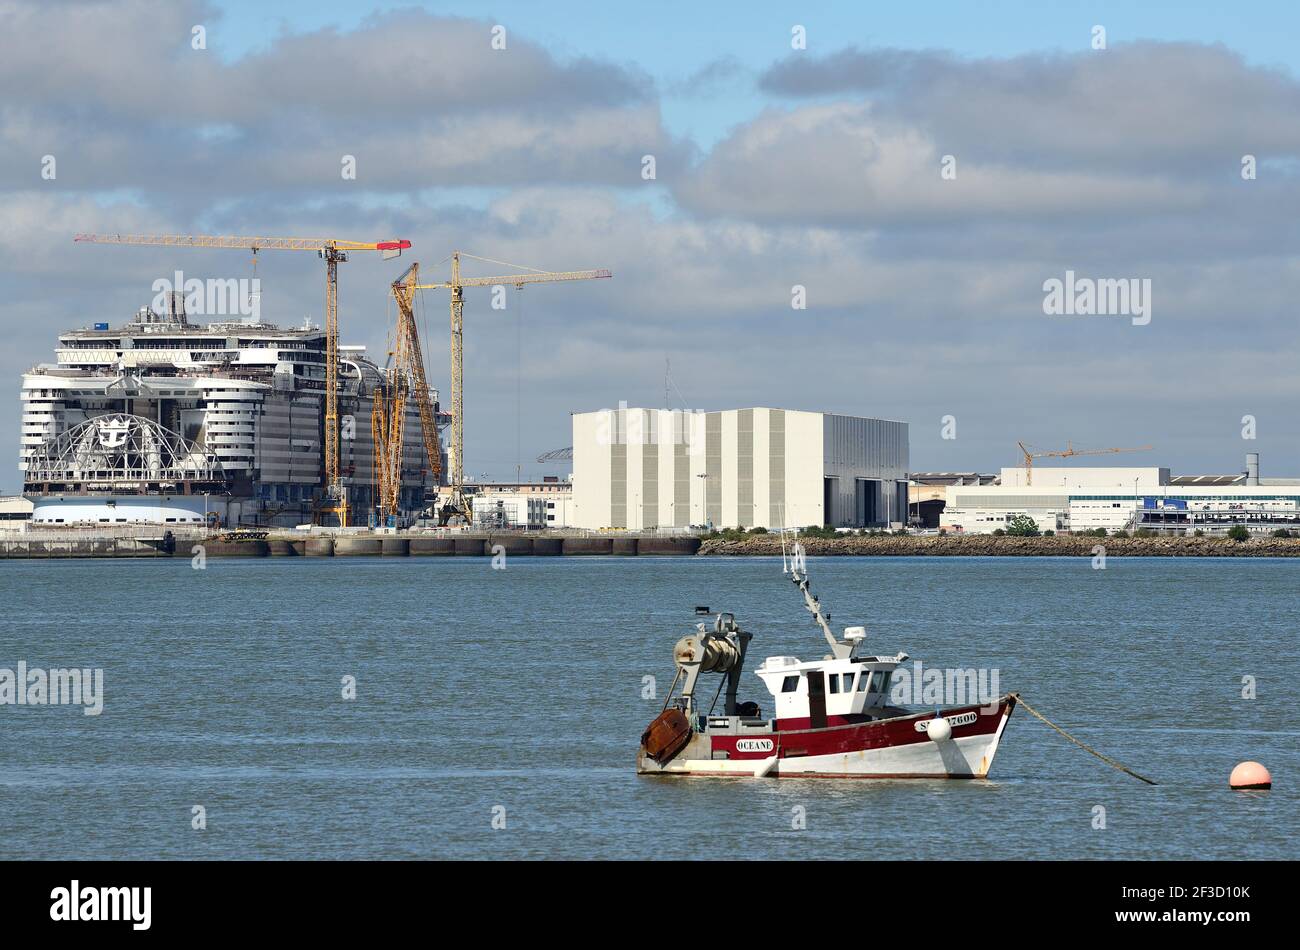 Saint-Nazaire (Francia nordoccidentale): Nave caraibica reale in costruzione presso i cantieri navali "chantier naval de l’Atlantique". Piccola barca da pesca i Foto Stock